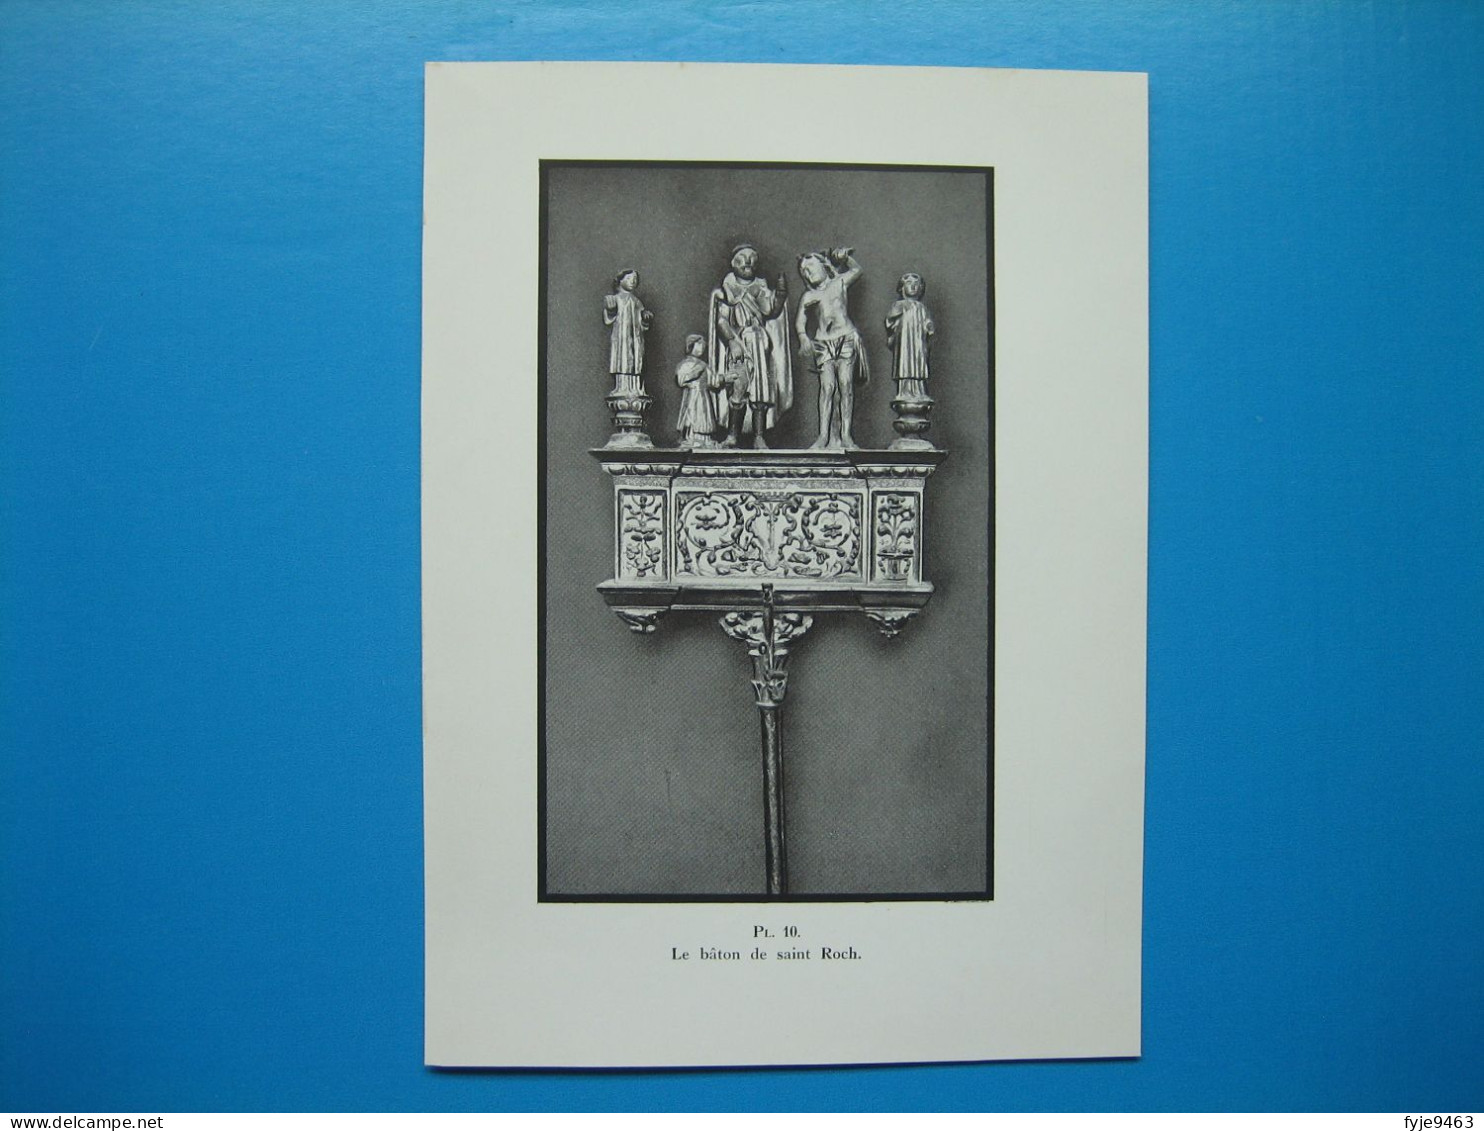 (1937) Église SAINTE-EULALIE de BORDEAUX (14 illustrations)